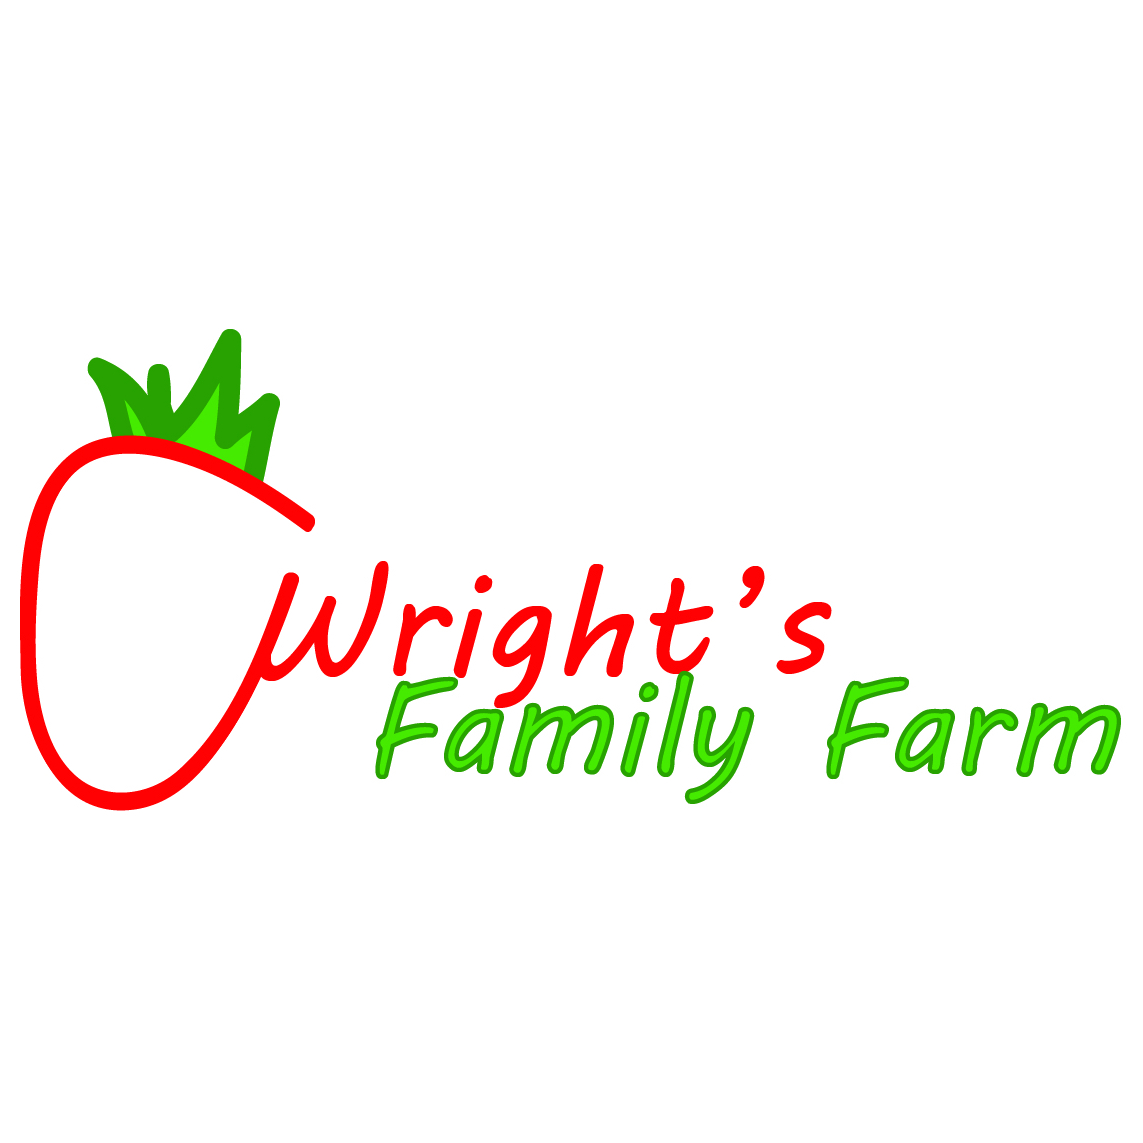 Wright's Family Farm Ltd.